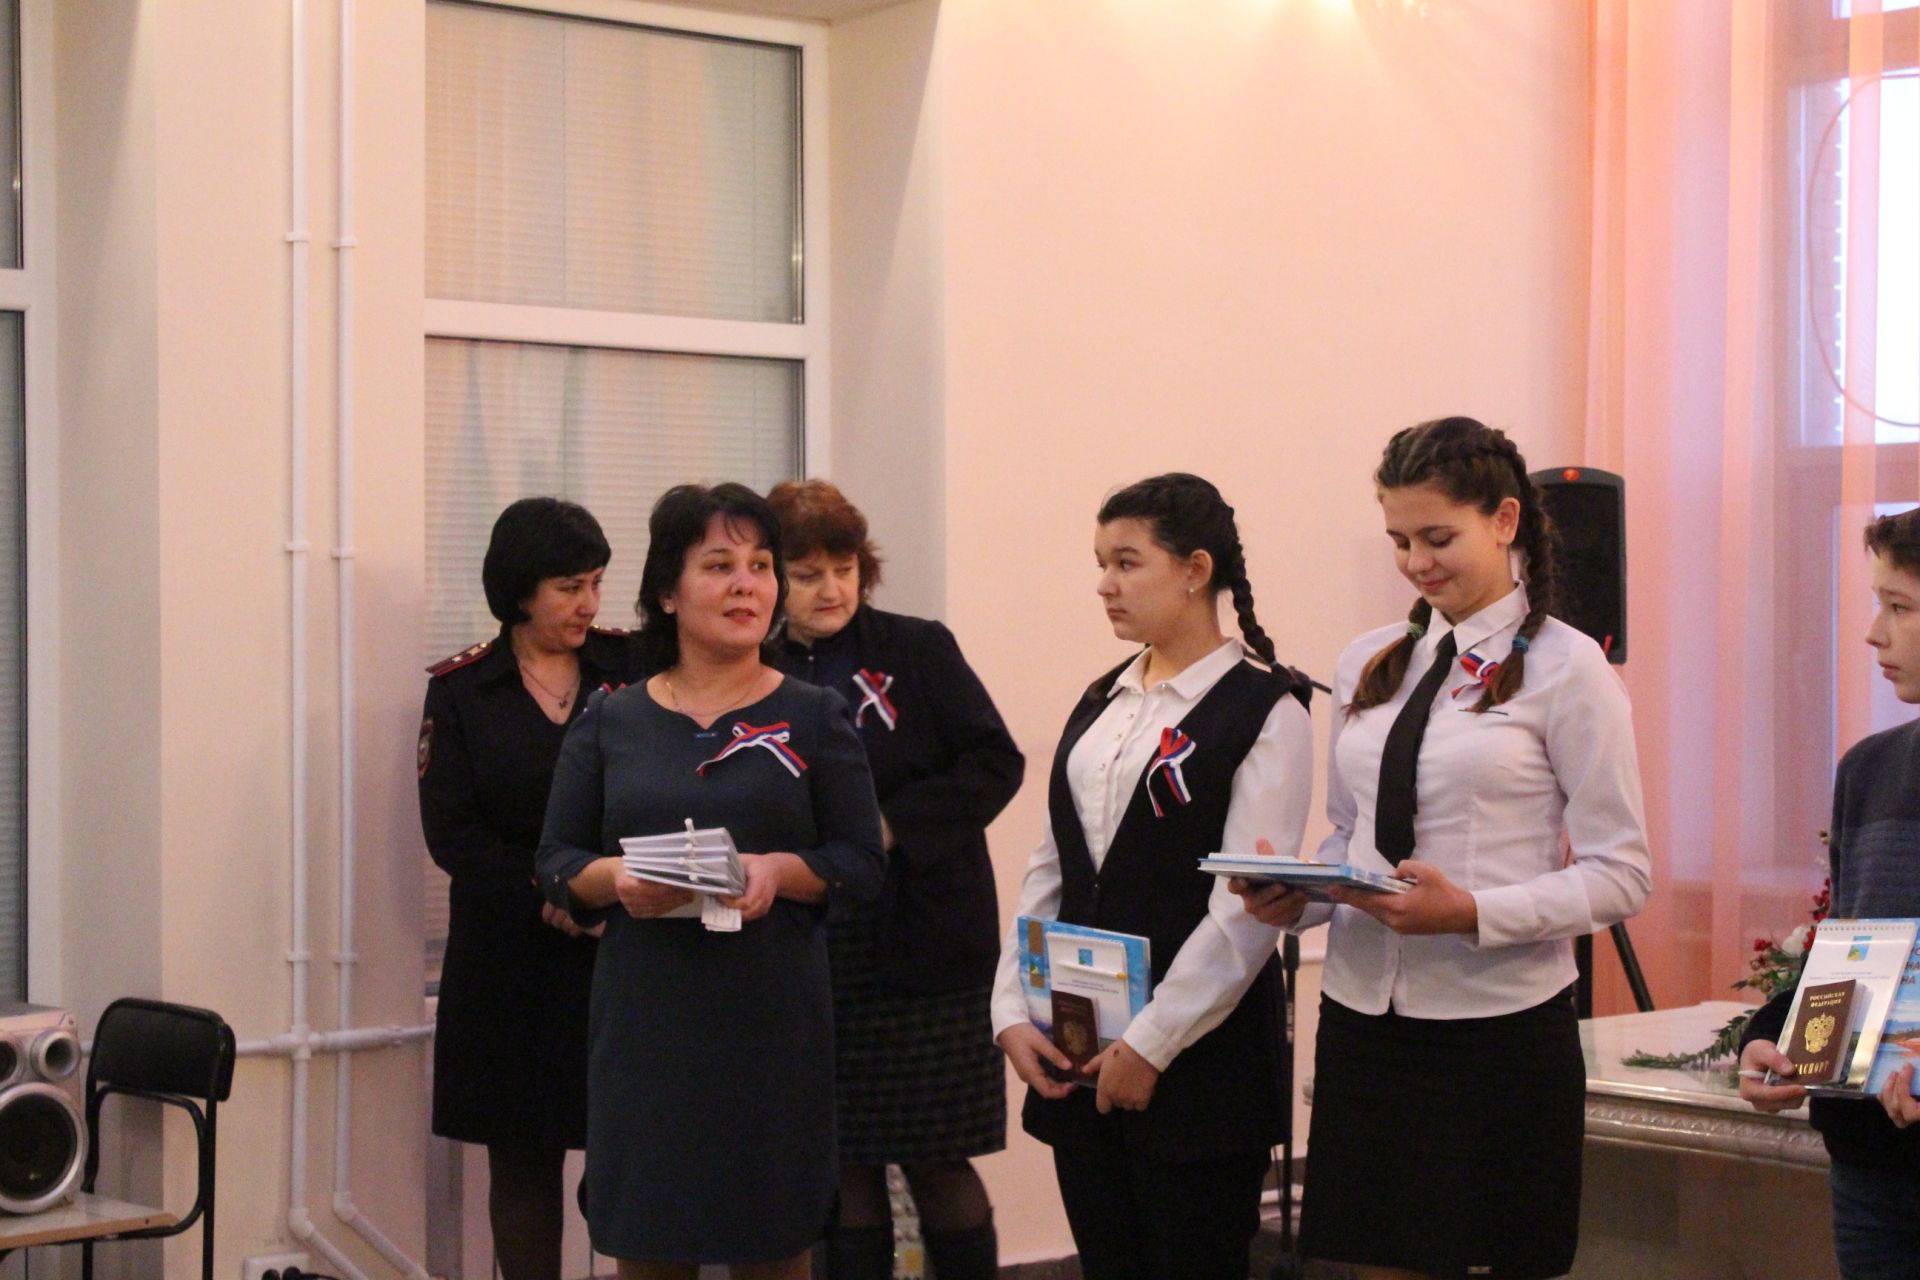 Торжественно вручение паспортов в День Конституции РФ состоялось в Камском Устье